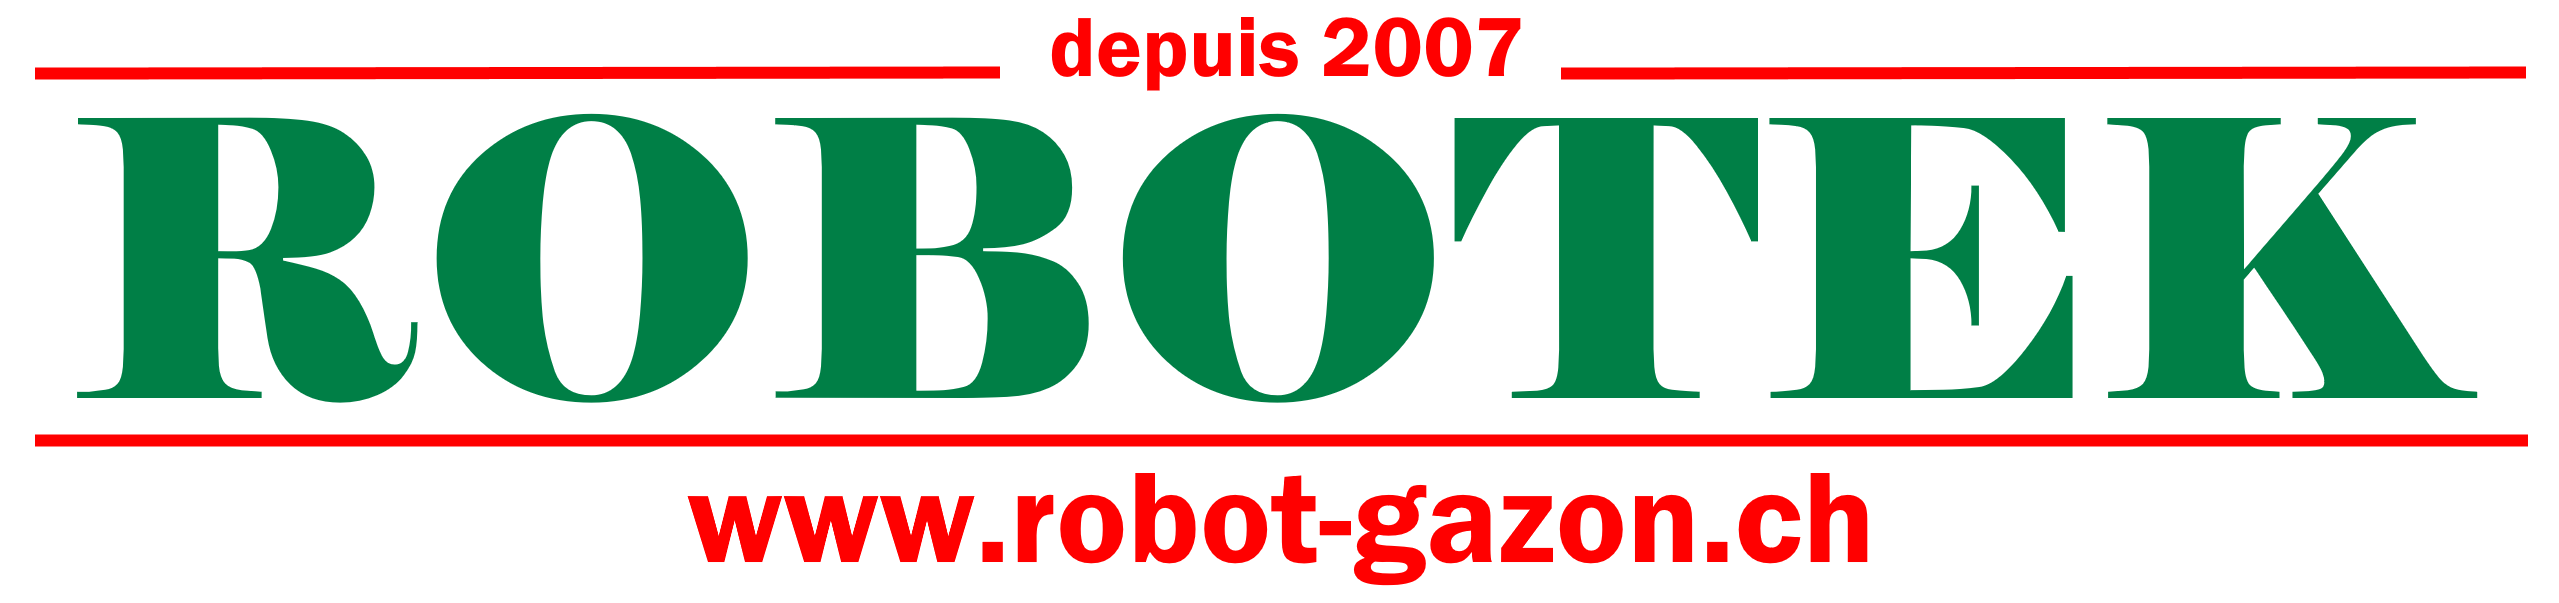 logo Robotek